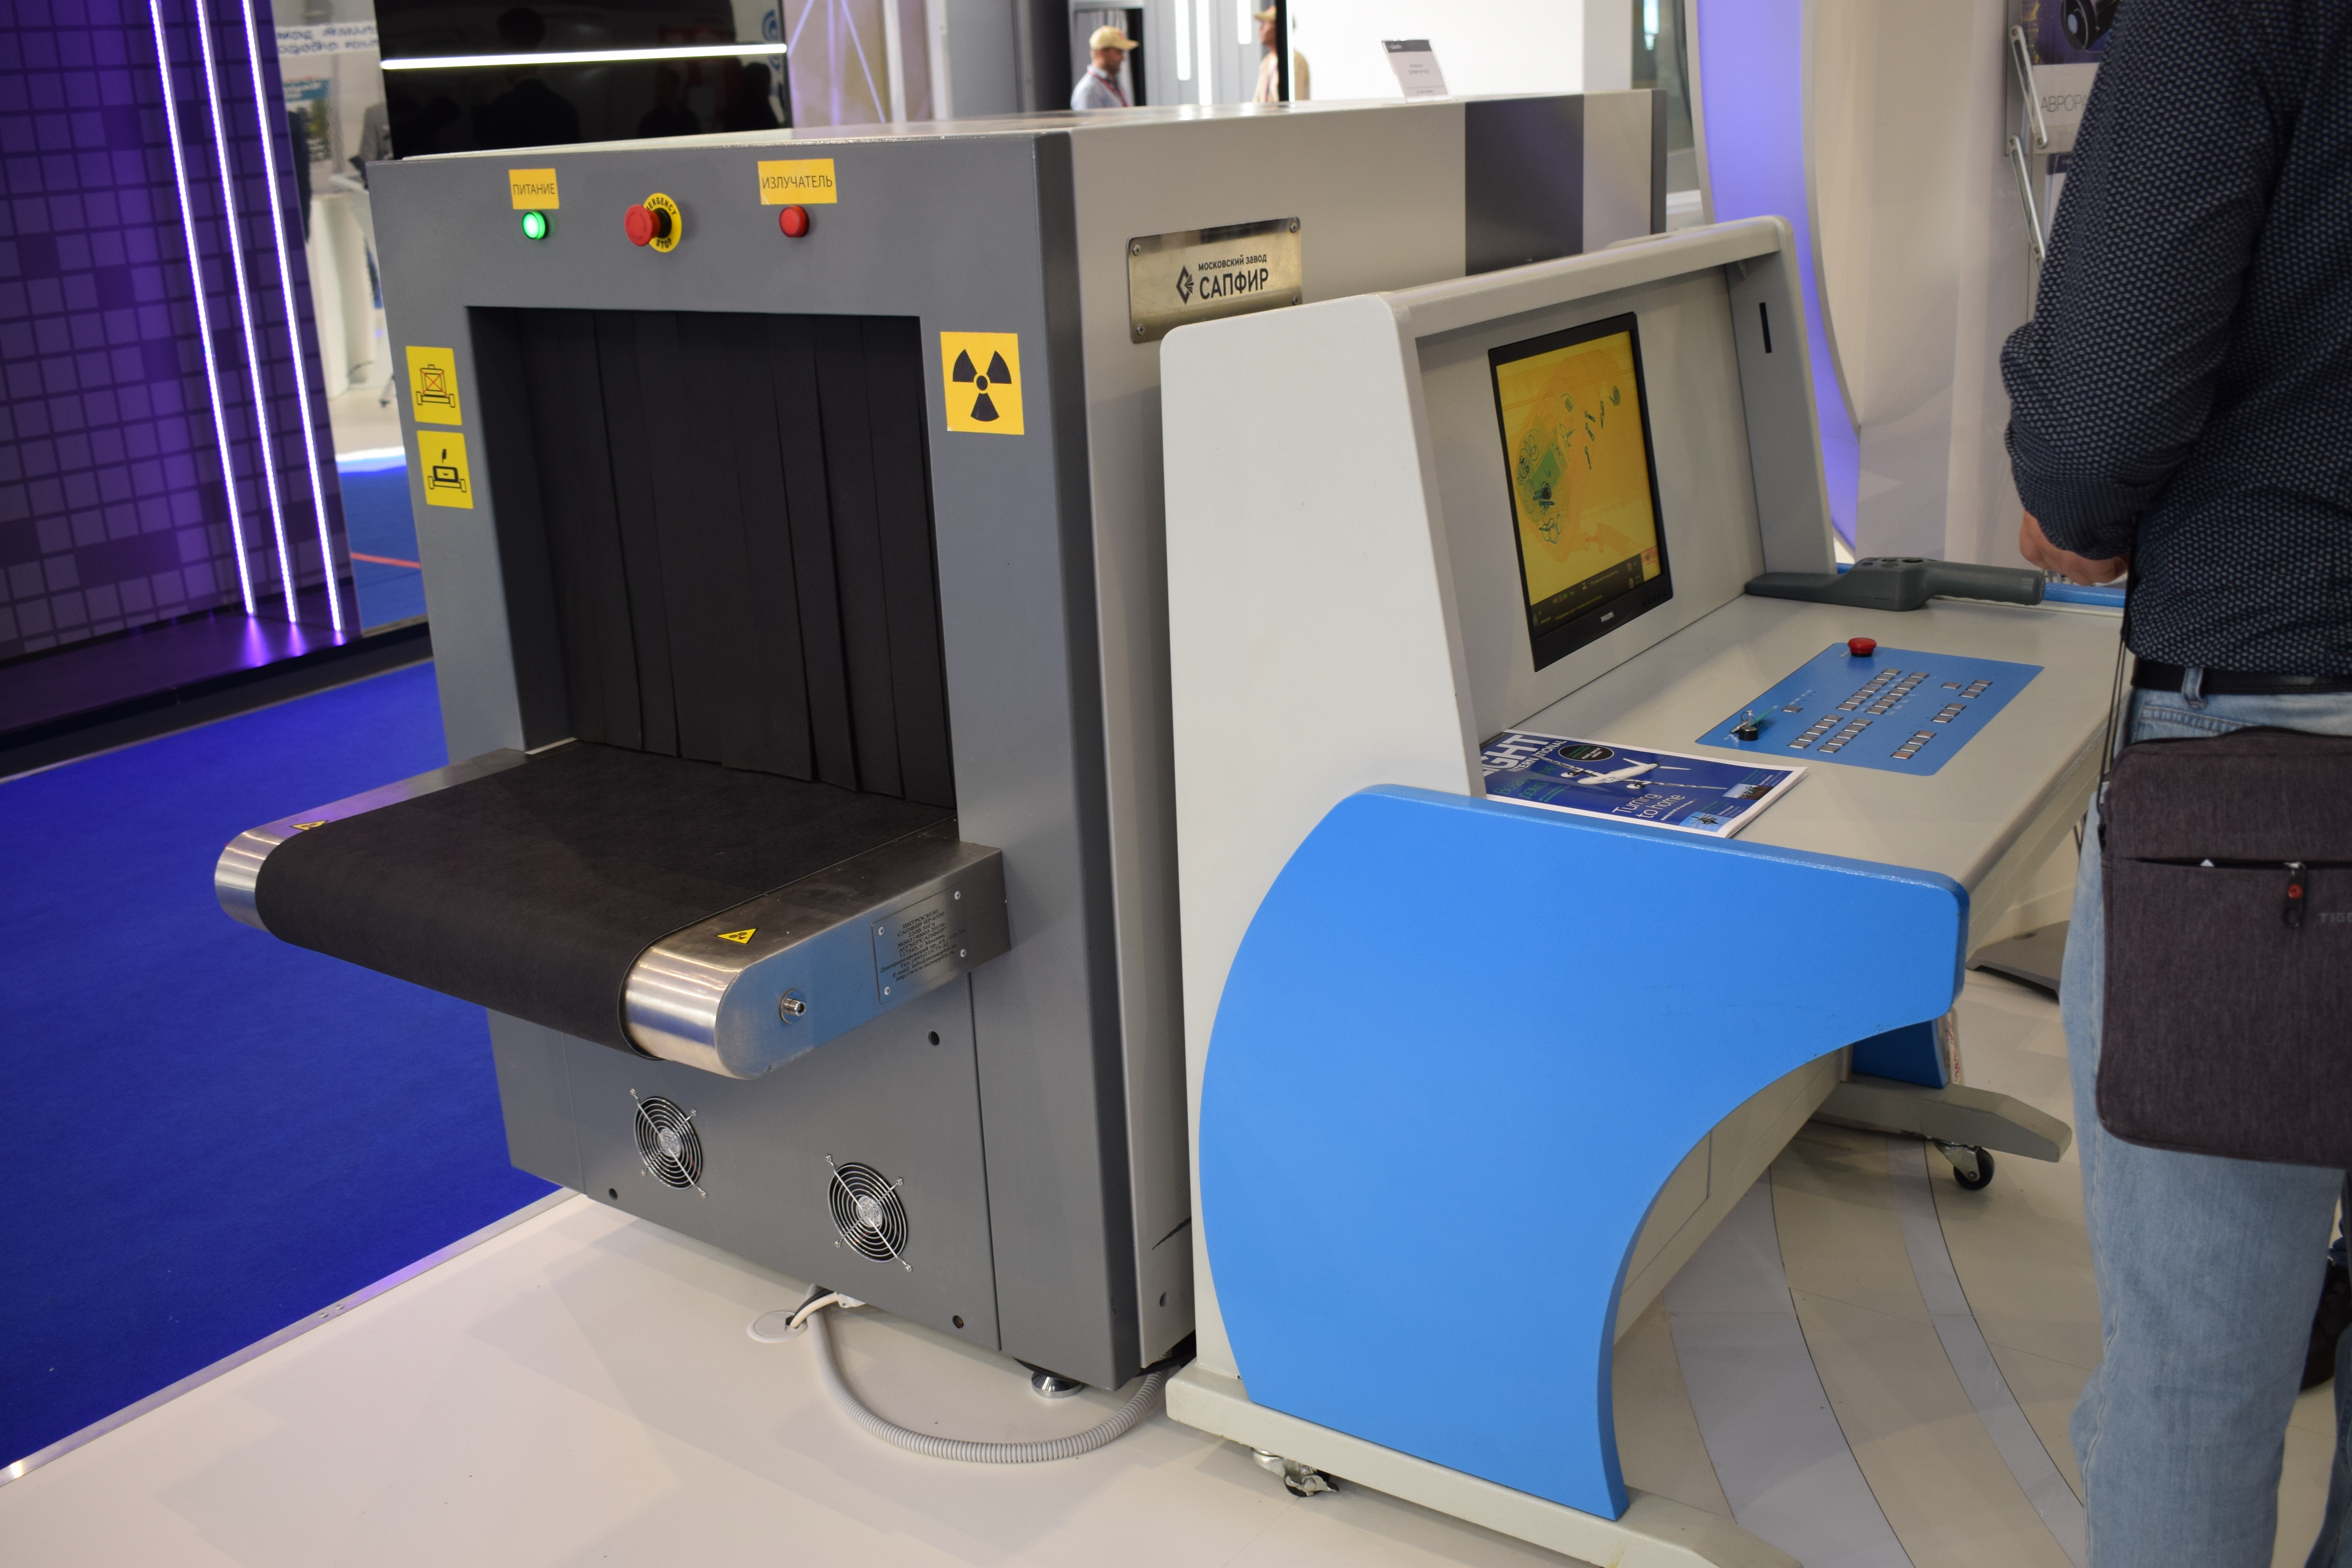 Techik instrument prisustvovao je MAKS-2021 sa najnovijim rendgenskim skenerima za prtljagu